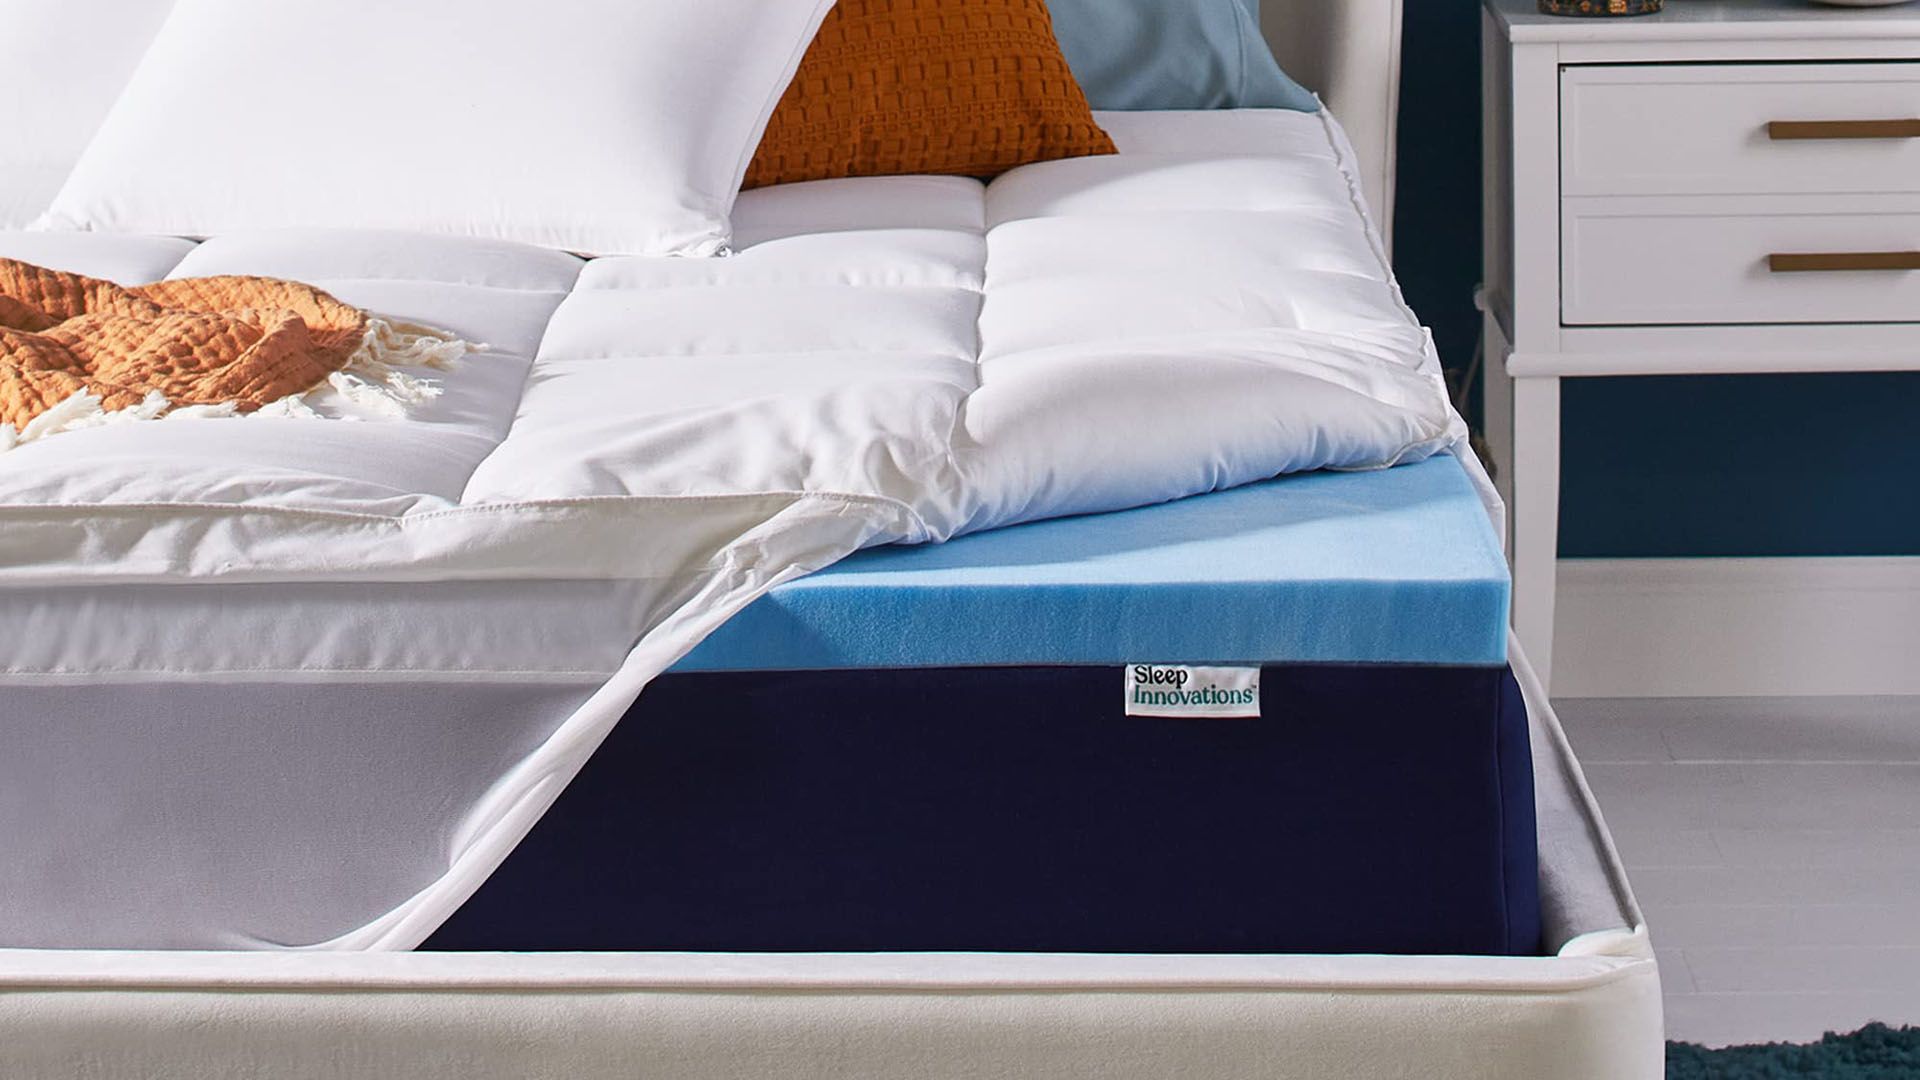 sleep studio mattress topper review